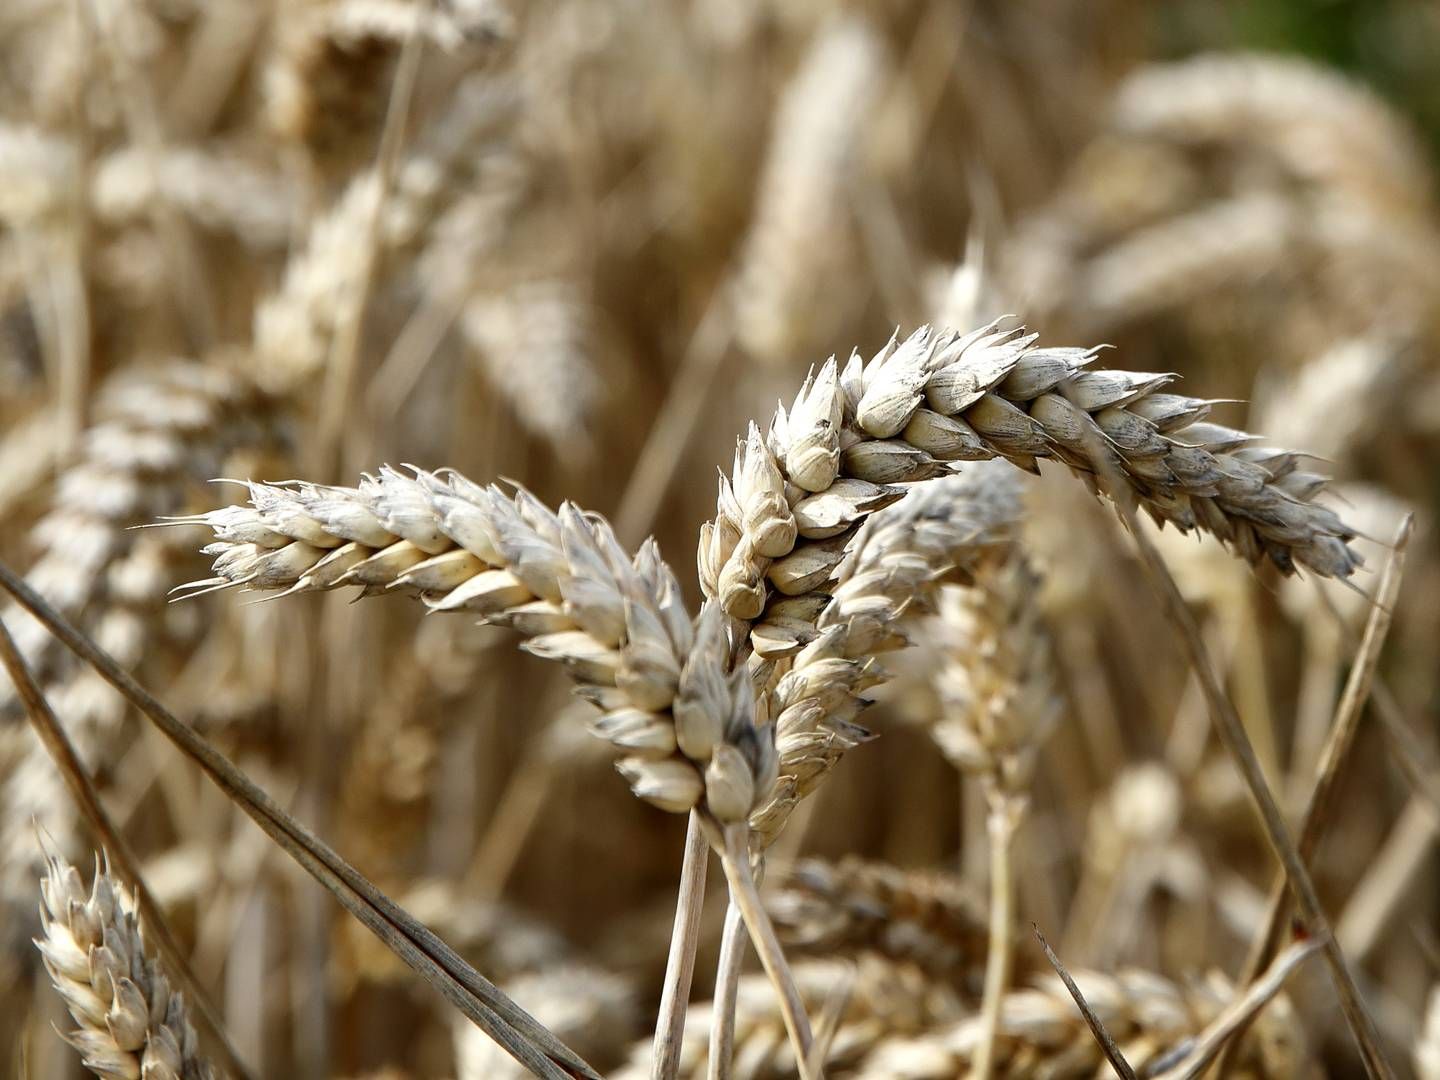 Ruslands krig i Ukraine er gået hårdt udover sidstnævntes eksport af korn. | Foto: Jens Dresling